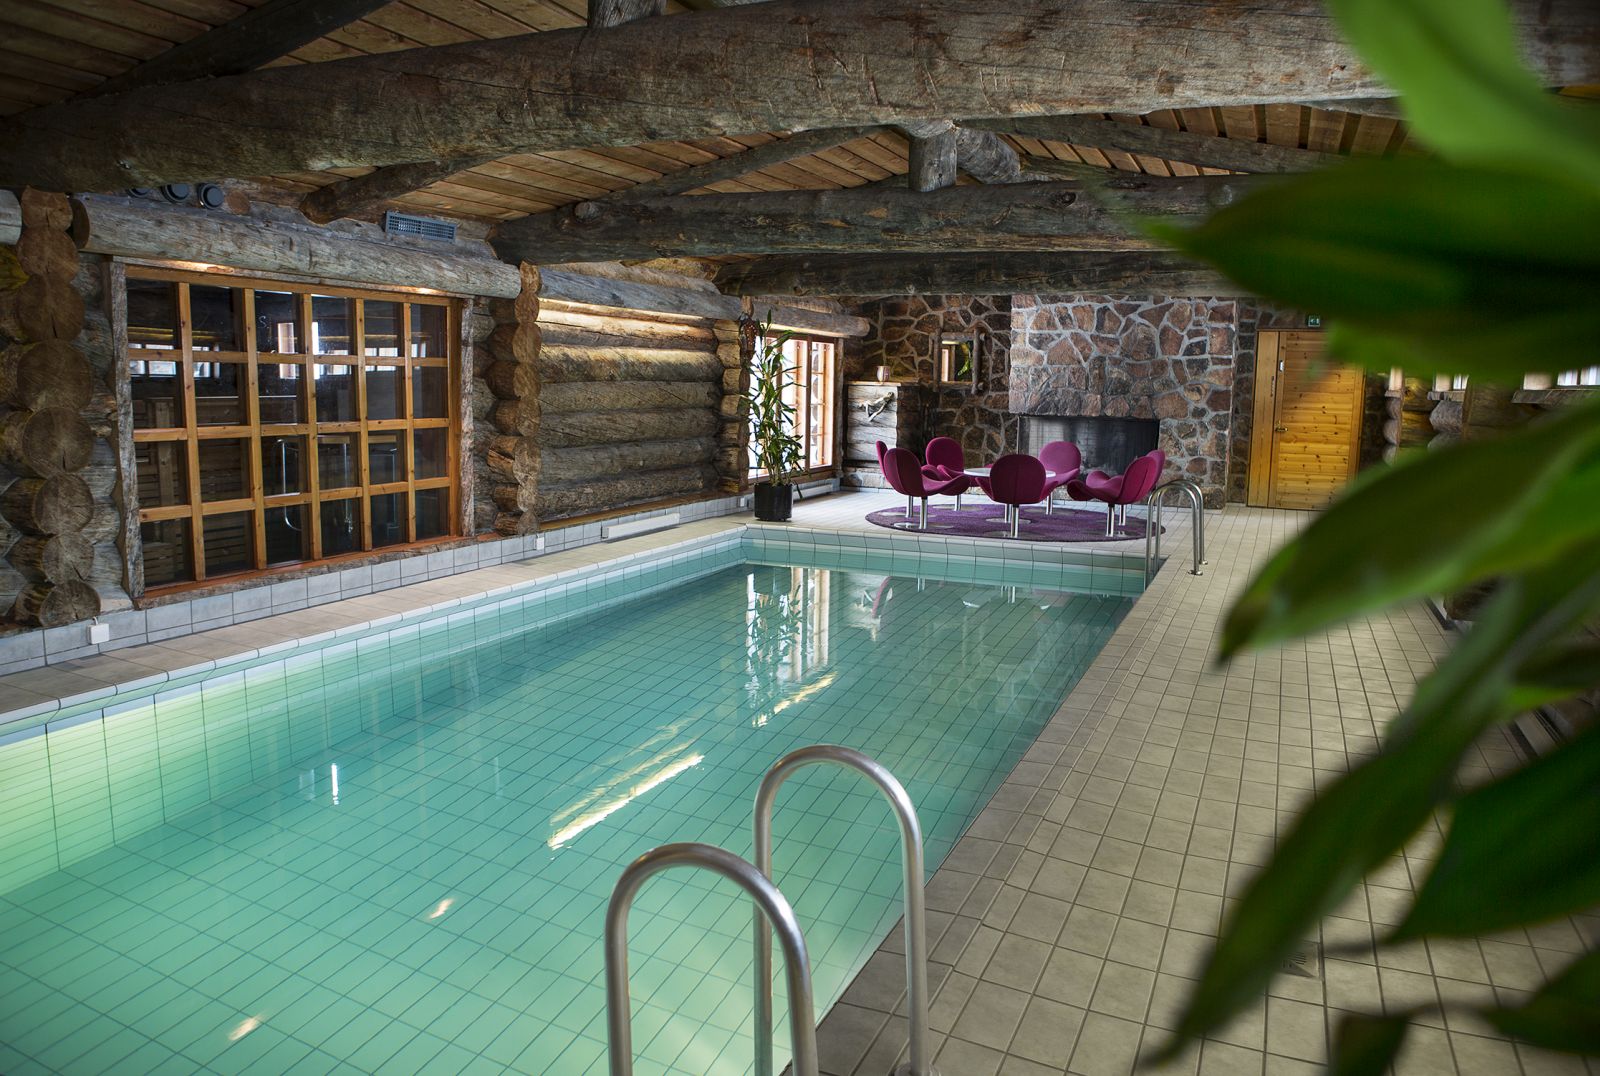 The indoor pool at Javri Lodge